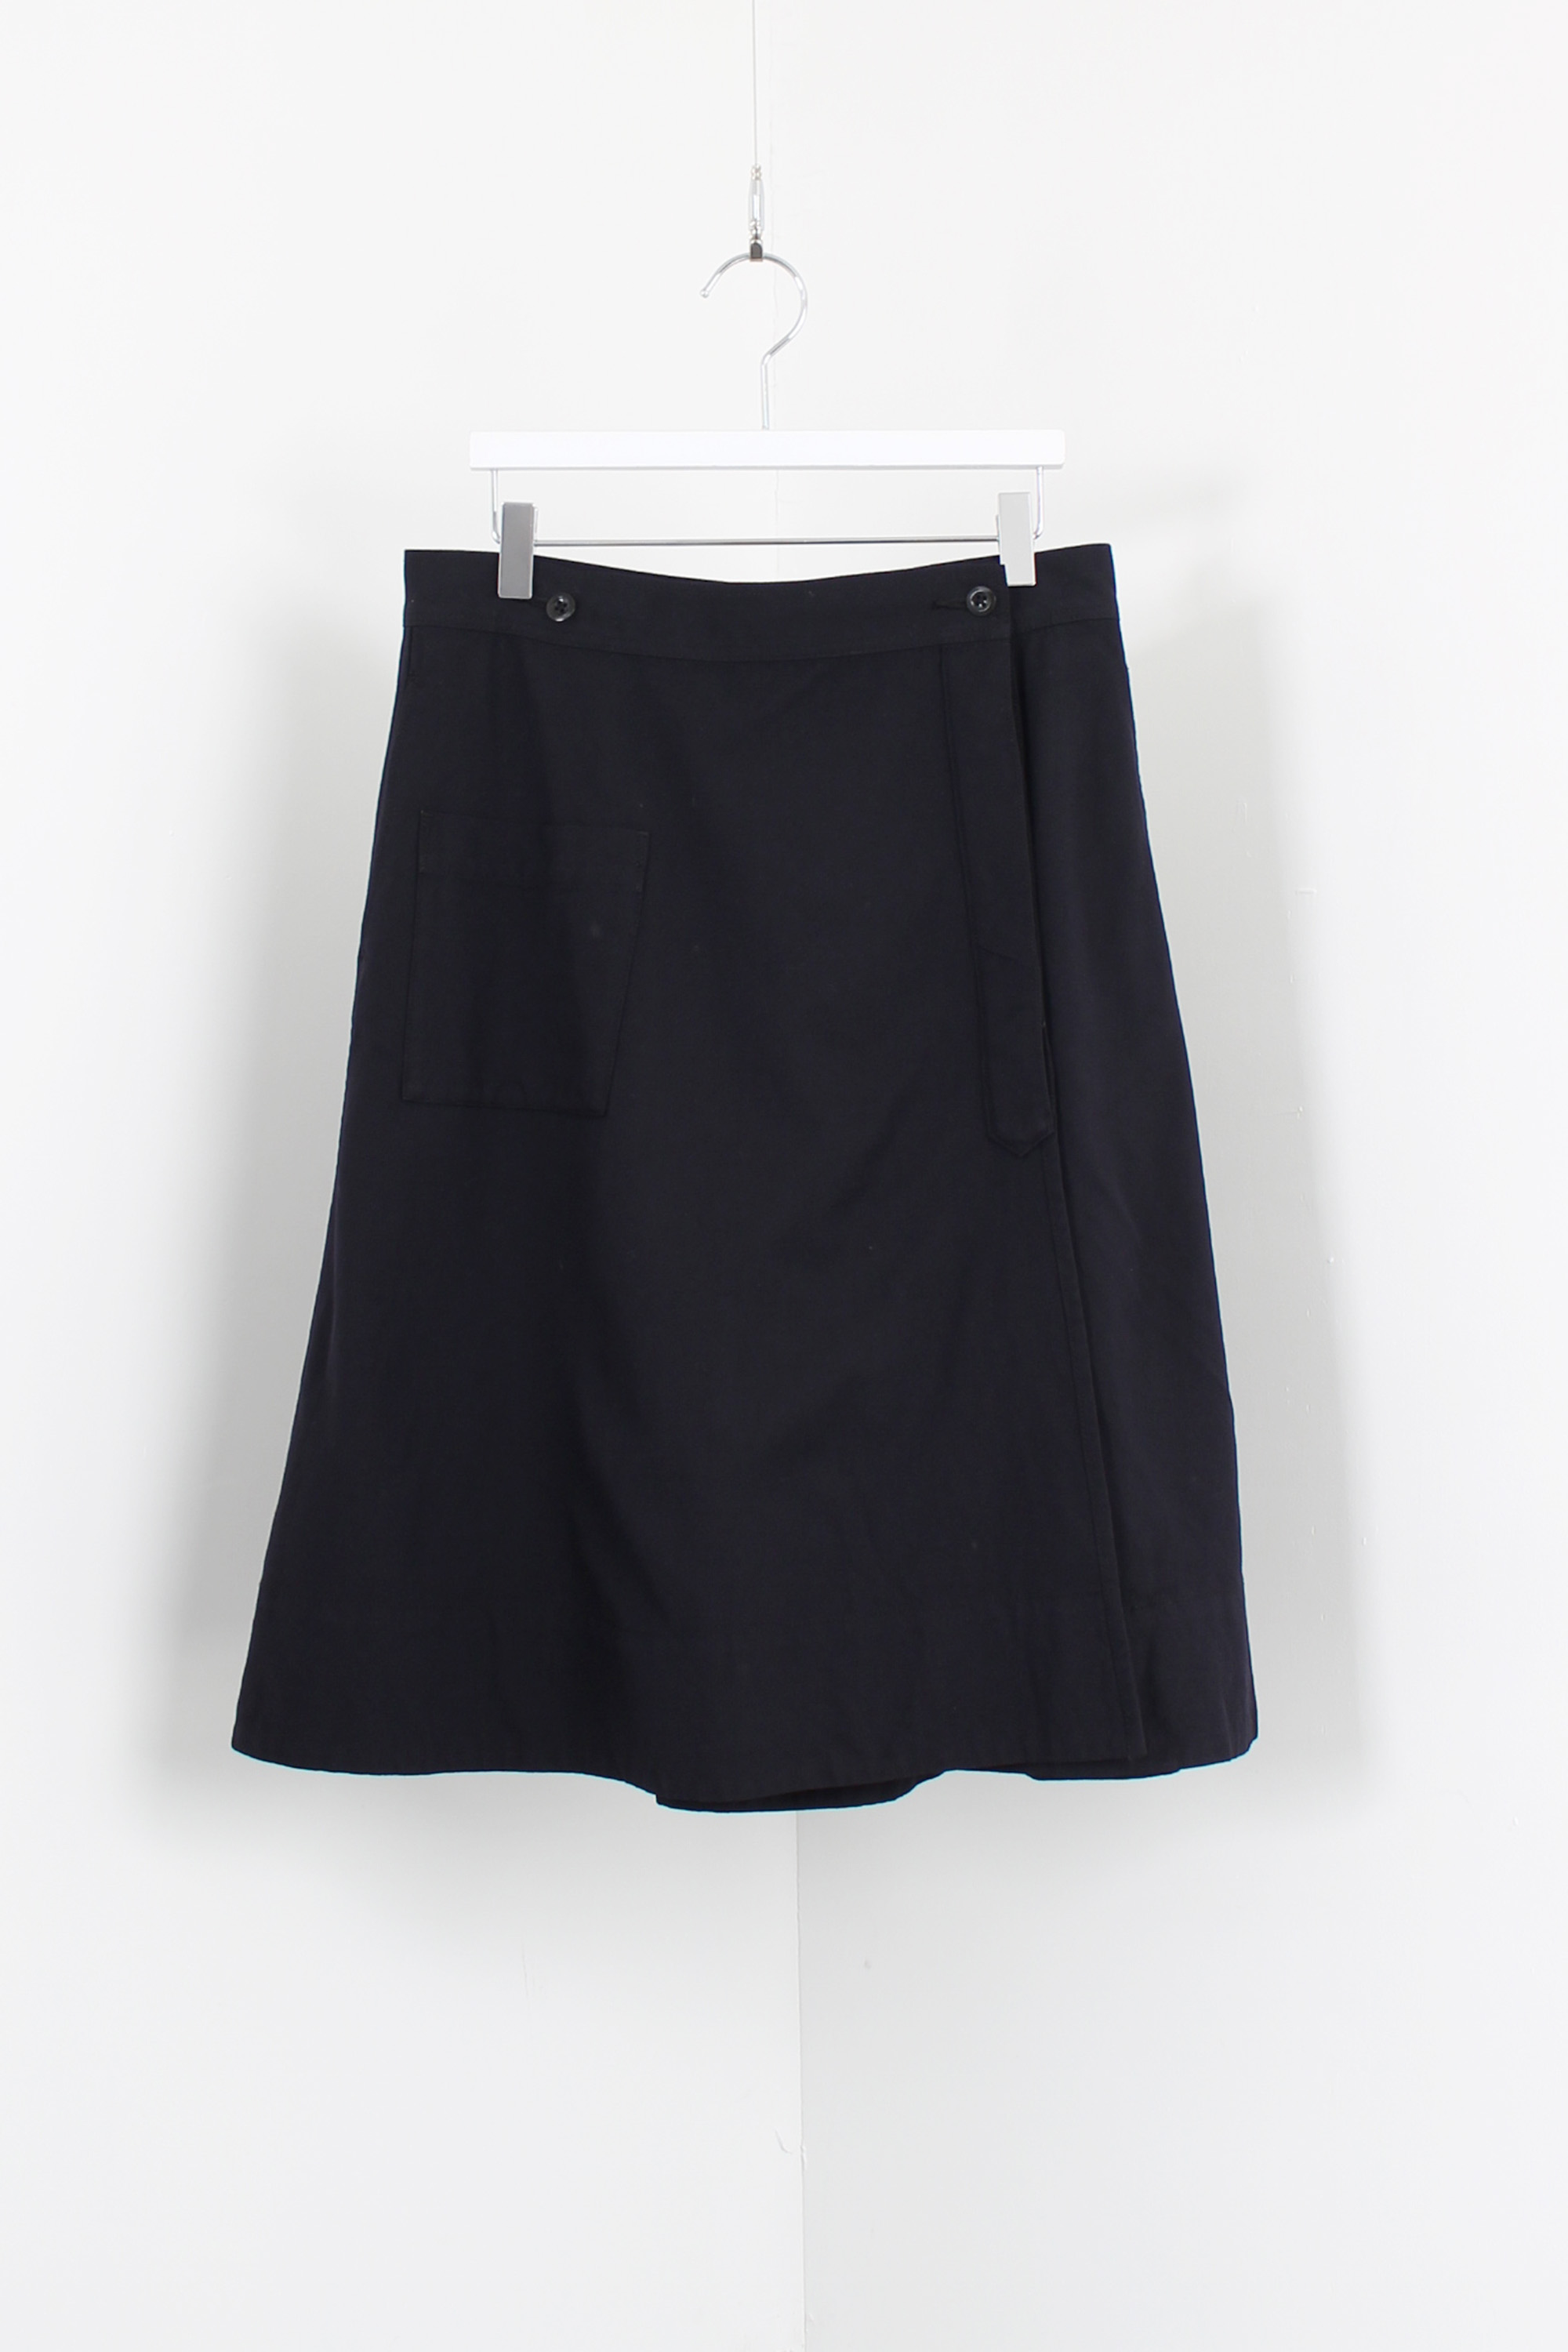 MHL skirt